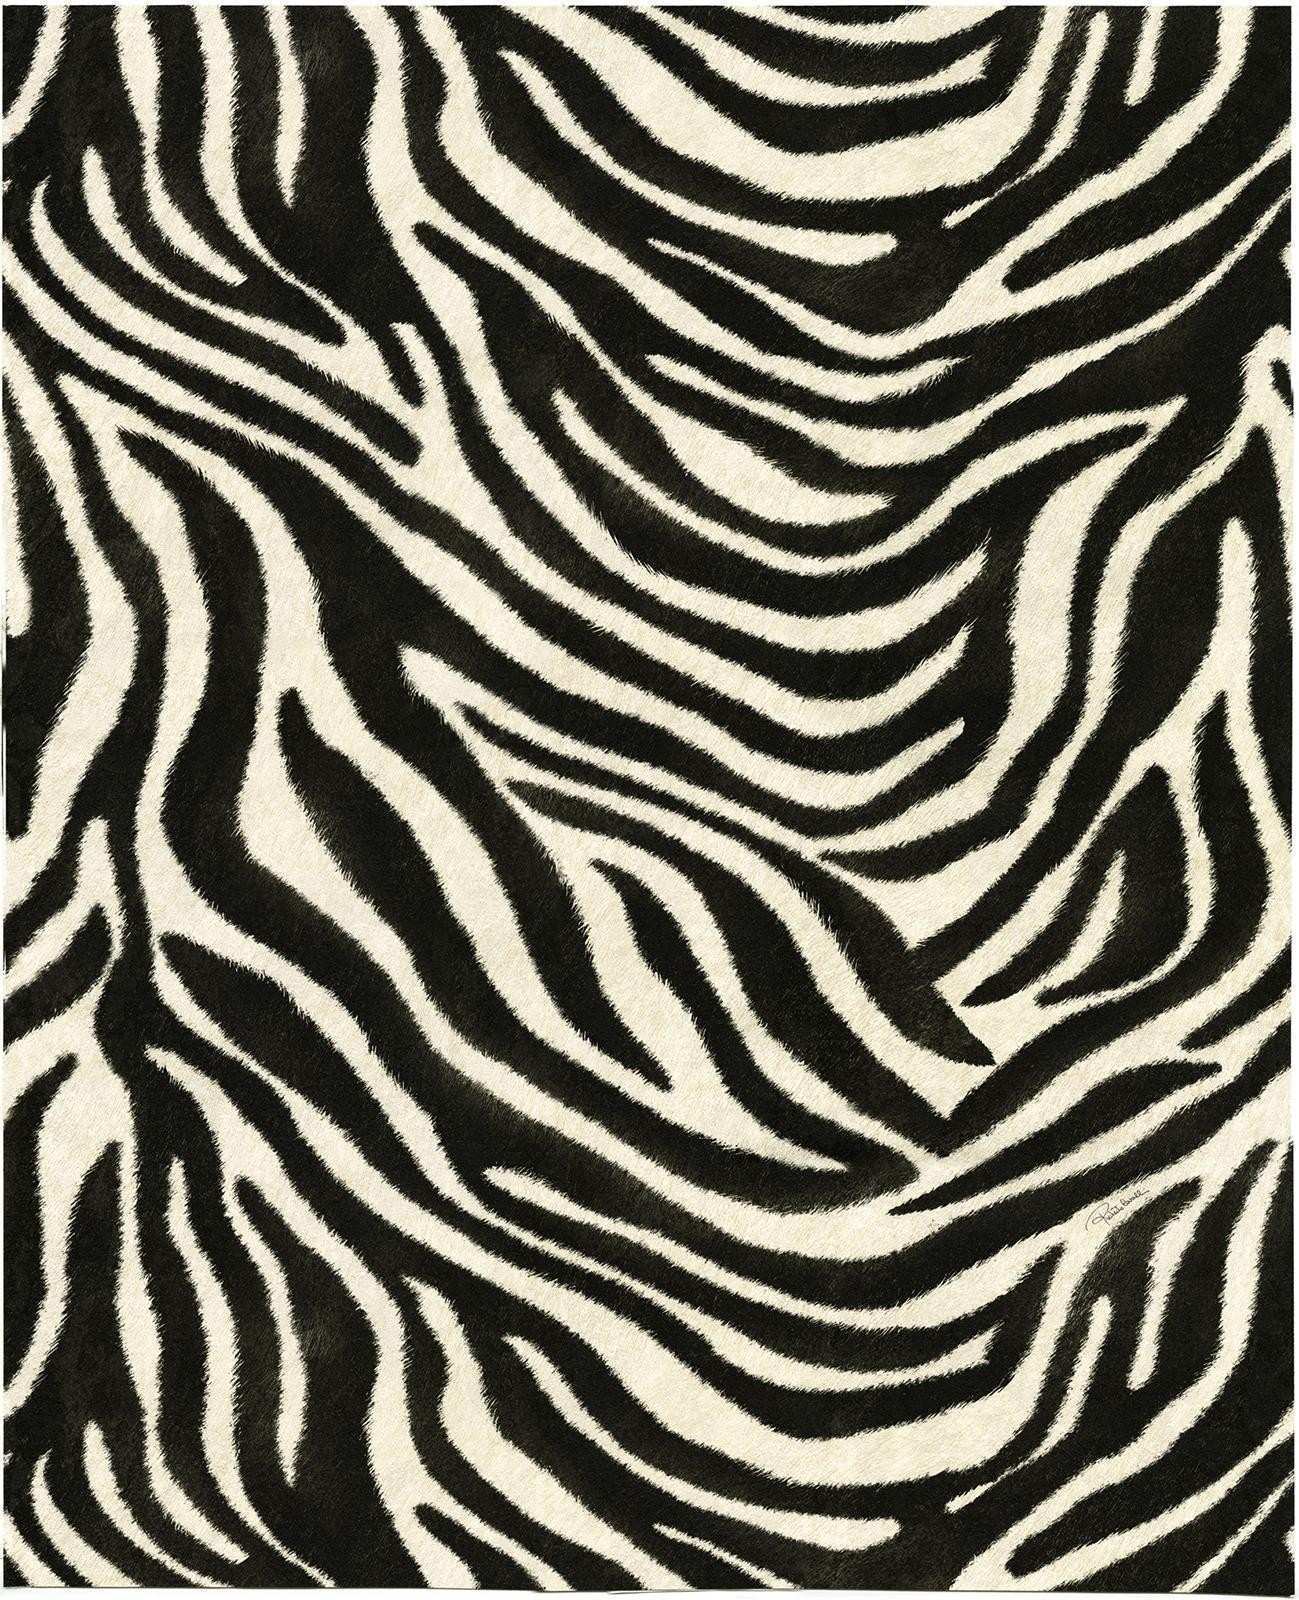 Zebra Print Wallpaper For Walls Lovely Buy Roberto - Roberto Cavalli Wallpaper Zebra - HD Wallpaper 